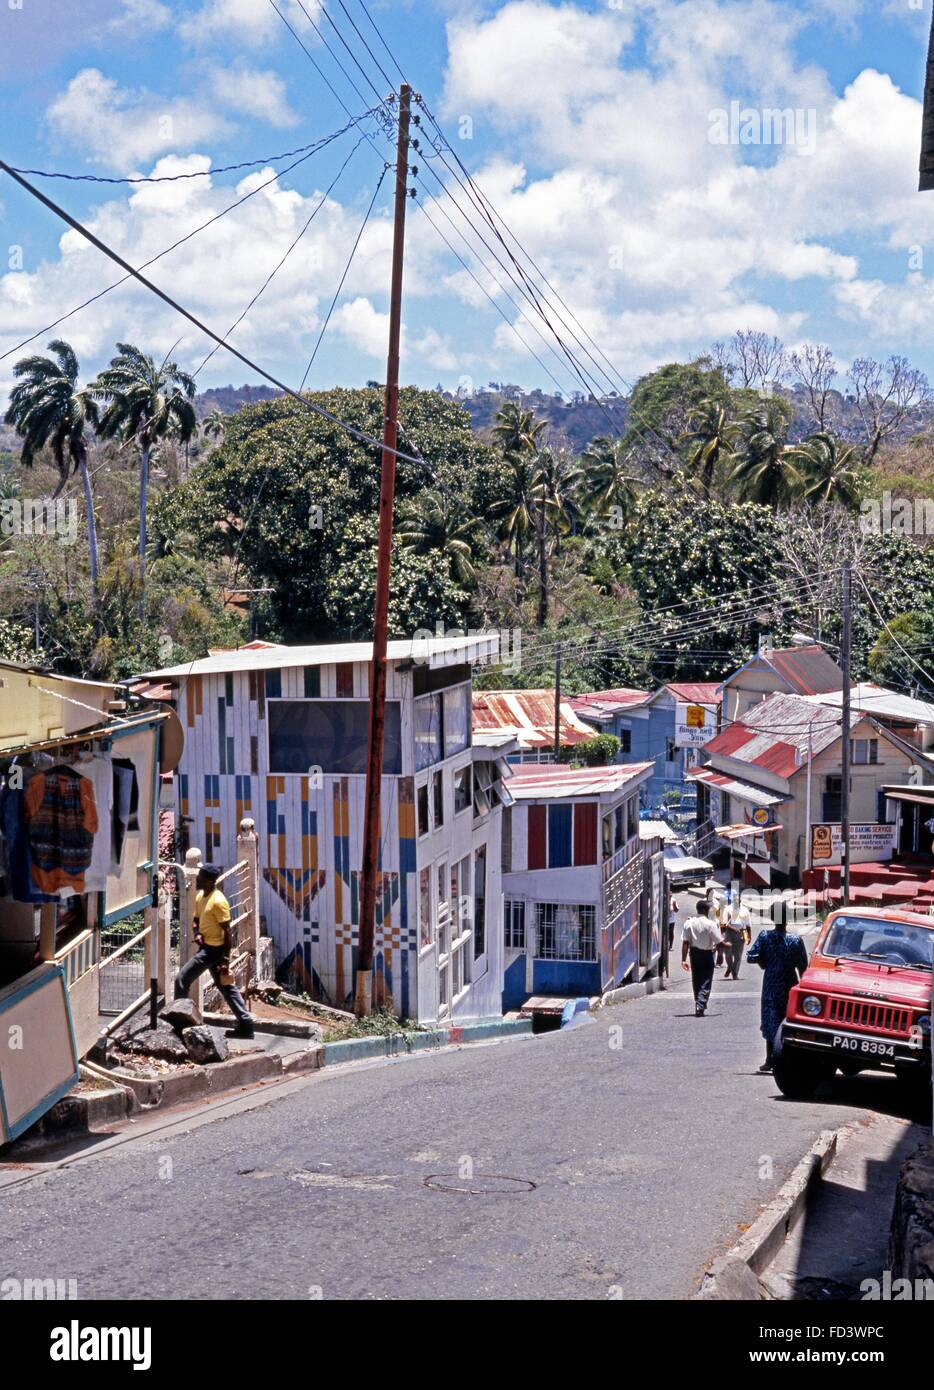 Buildings along village street, Scarborough, Tobago, Trinidad and Tobago, Caribbean. Stock Photo